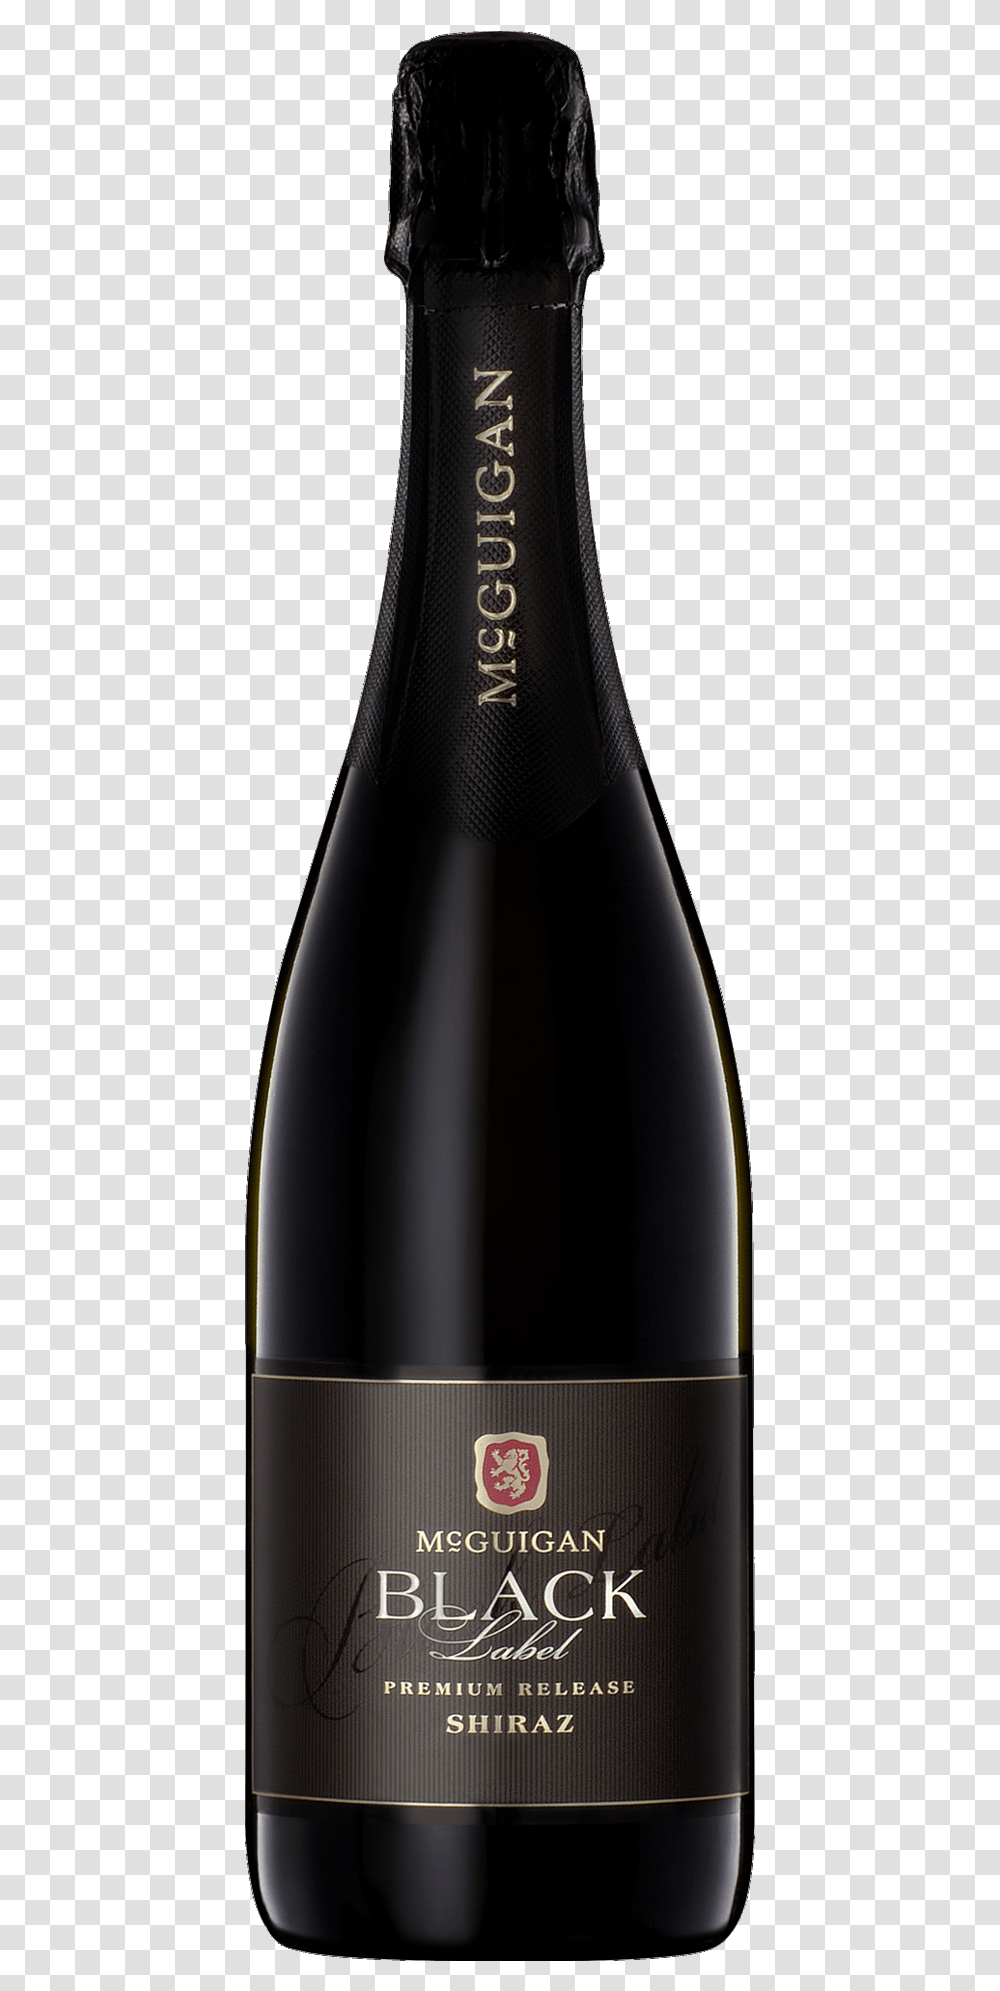 Unique Design Of Wine Bottles, Alcohol, Beverage, Drink, Red Wine Transparent Png